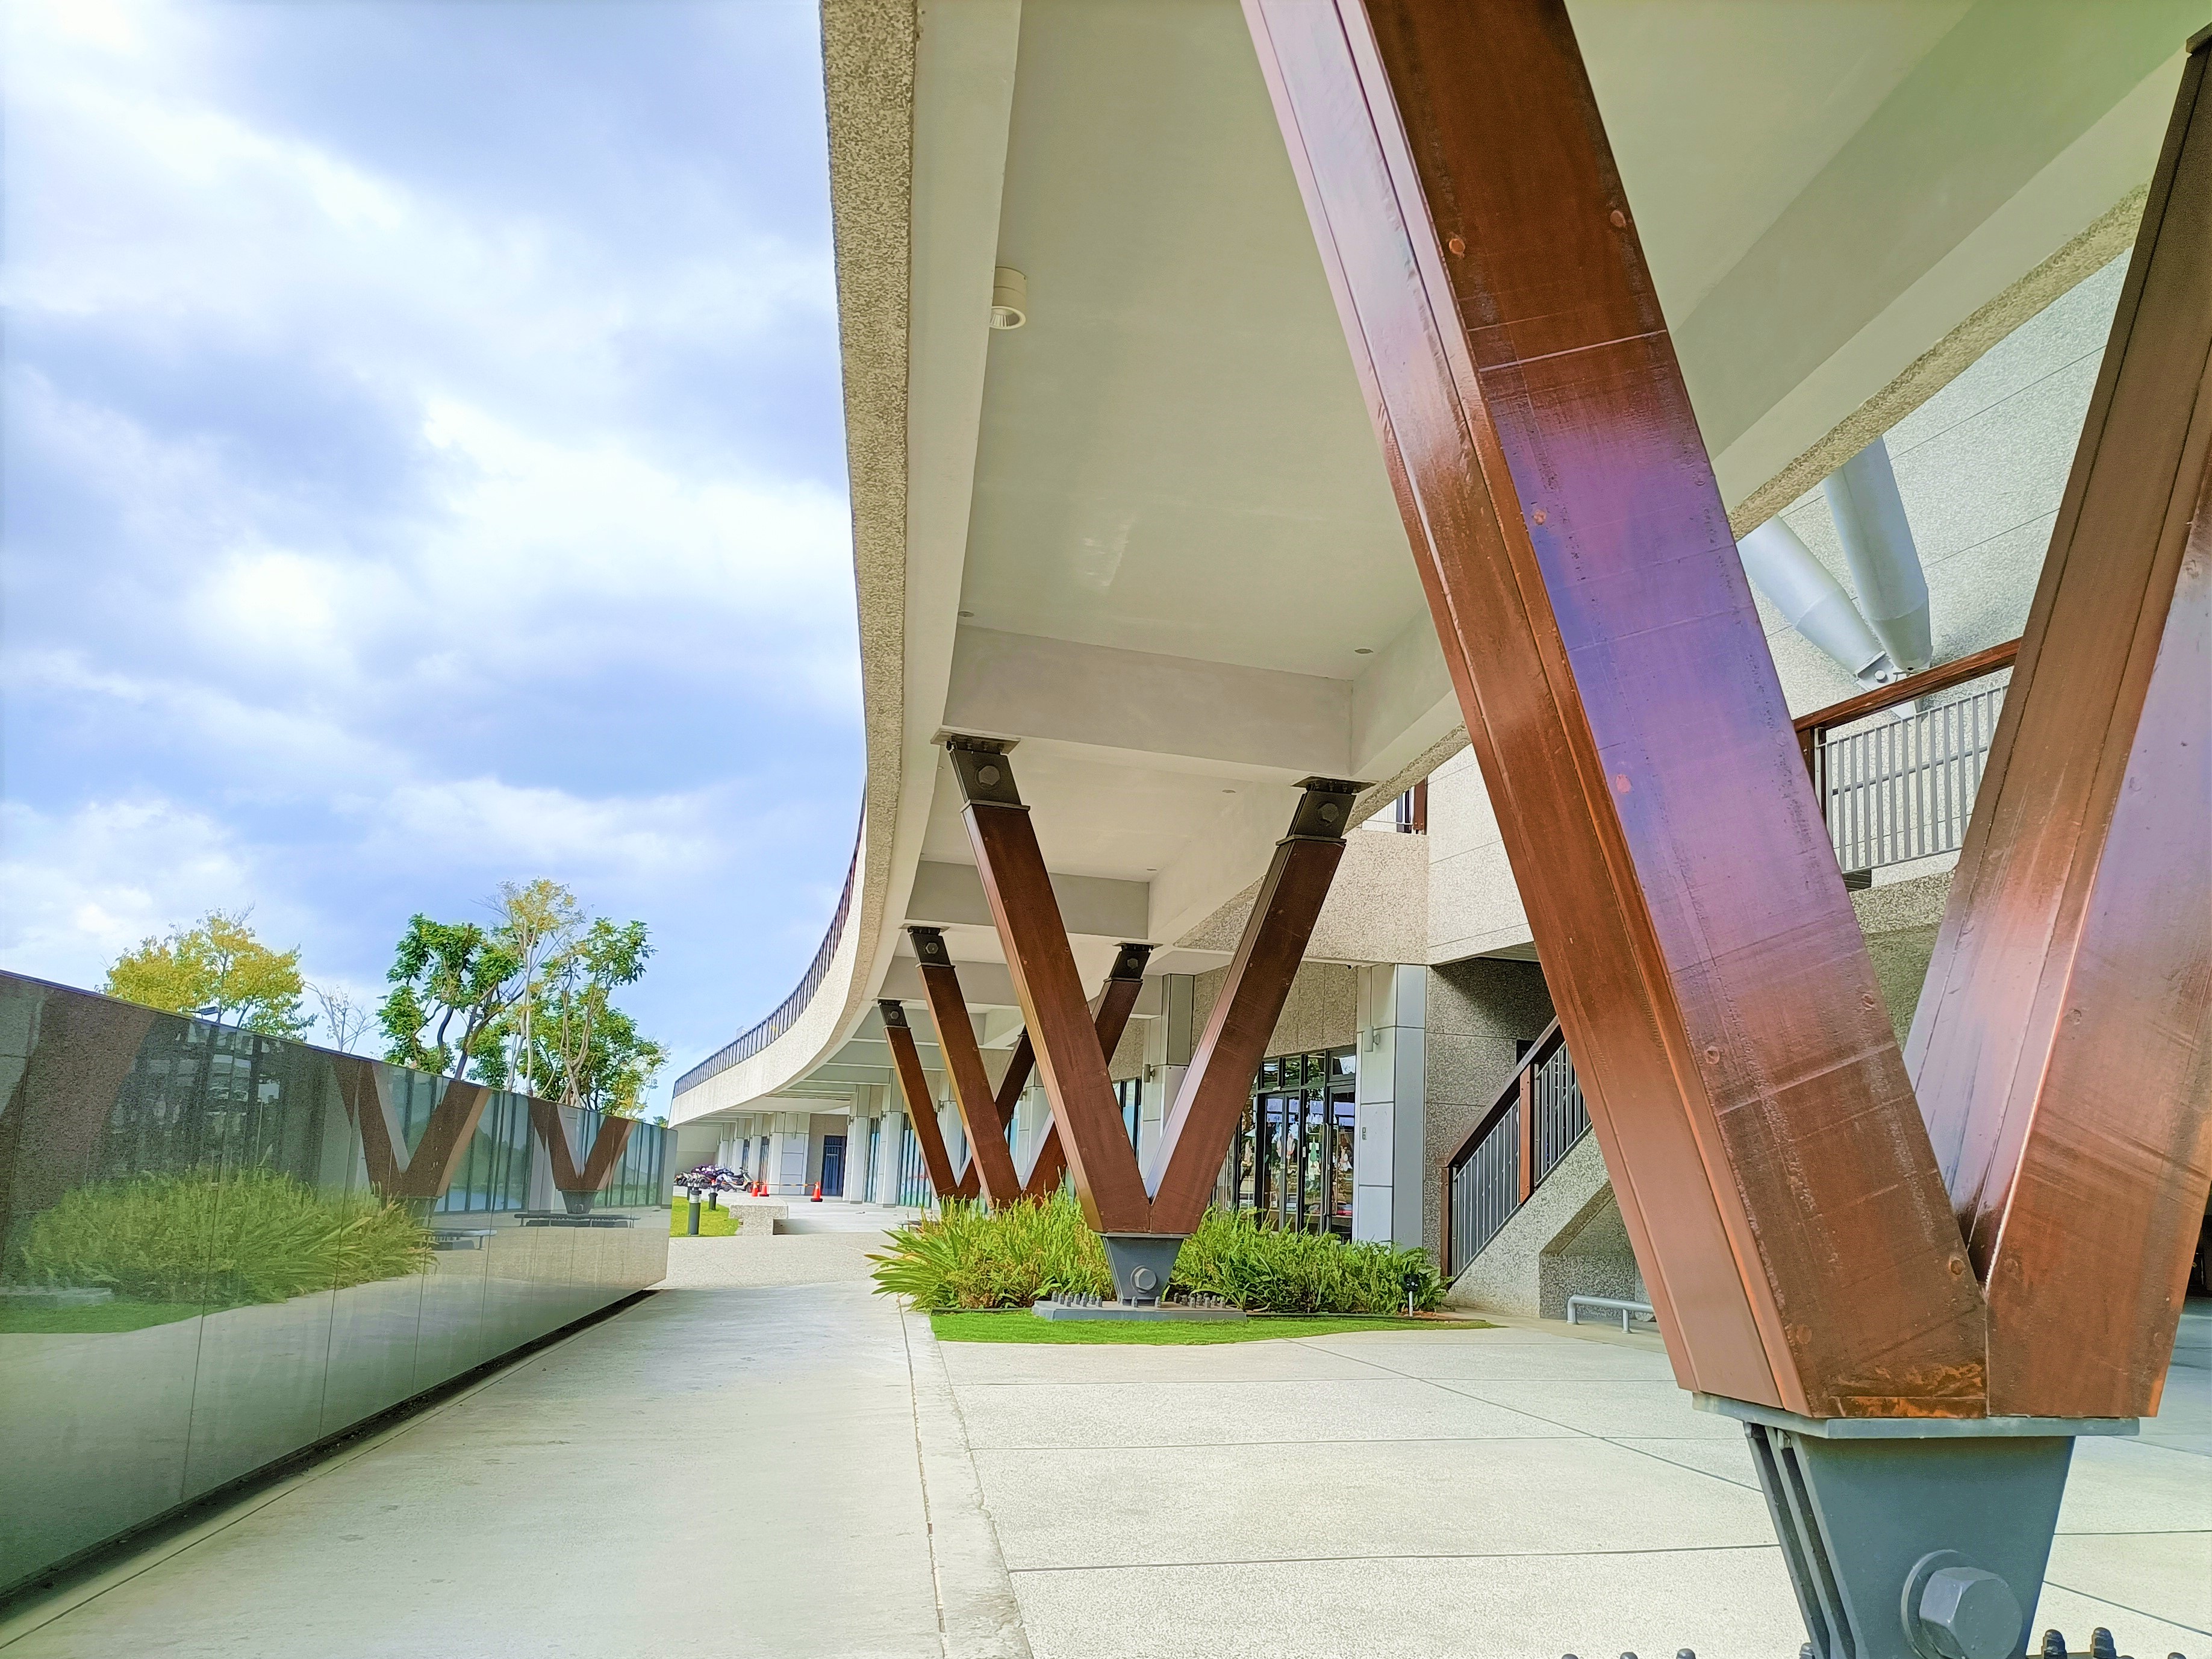 八里區公所西南側開放的弧形廊道，應用鋼構結合木材塑造濱海棧道意象特色